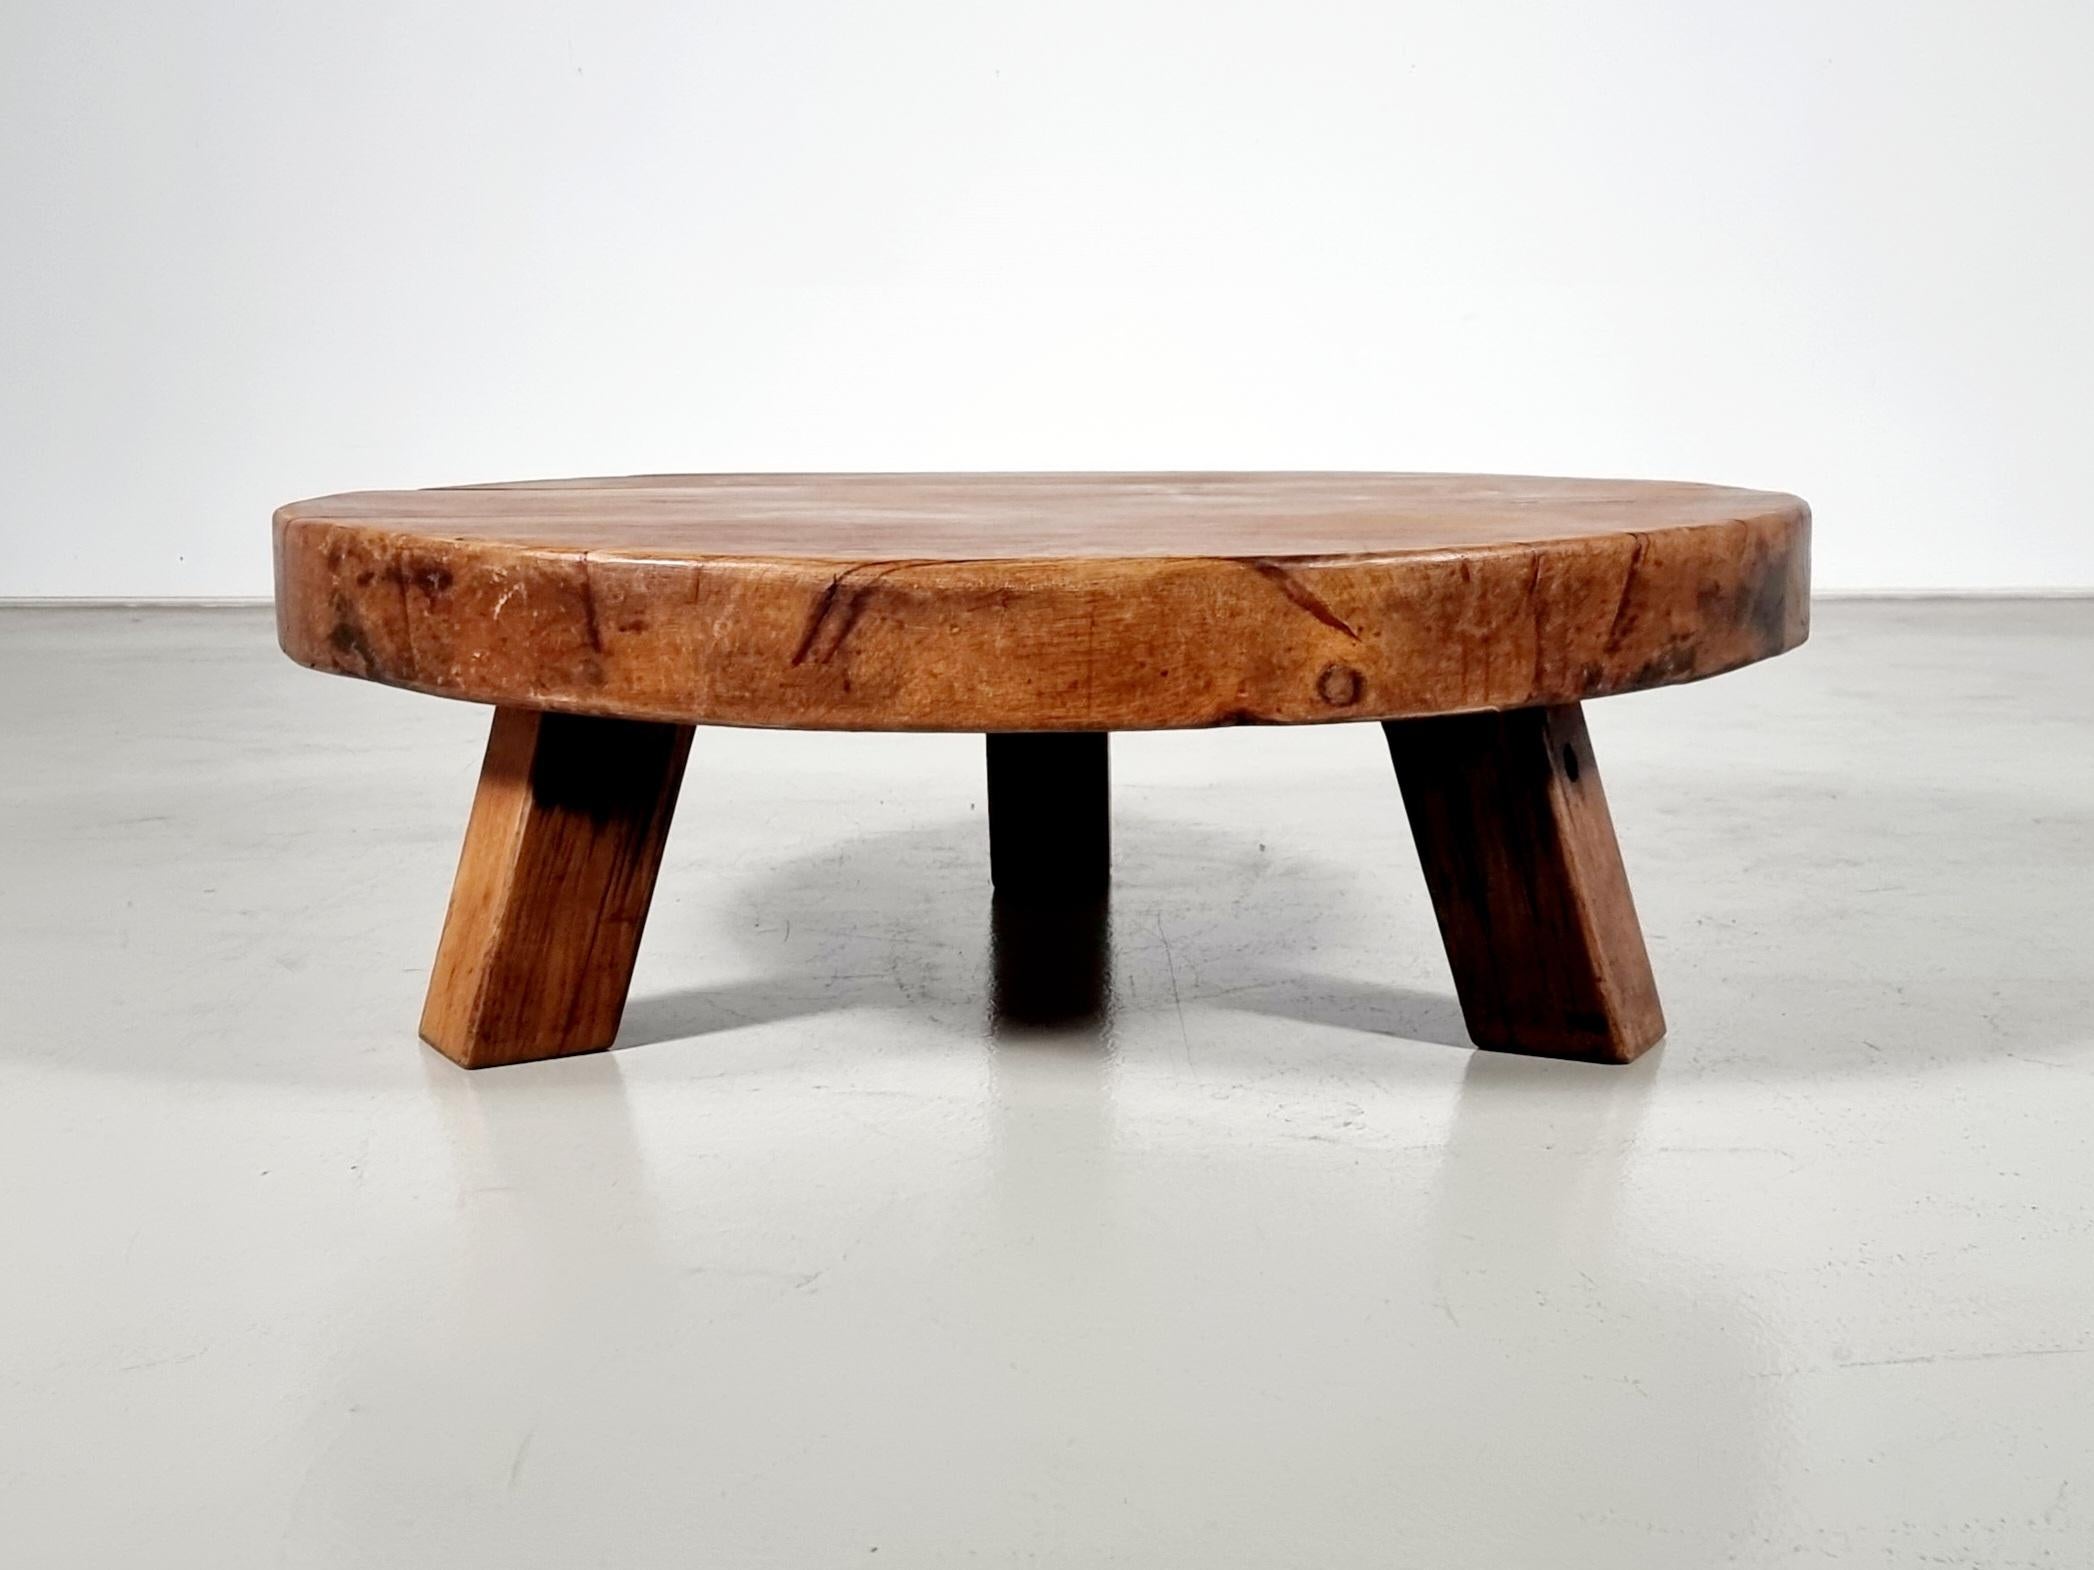 Impressionnante table basse faite à la main en très bon état d'origine.

La table est fabriquée en chêne français massif.

Le plateau rond et épais a une belle couleur chaude et est composé de poutres étroites, ce qui donne un bel effet.

La base